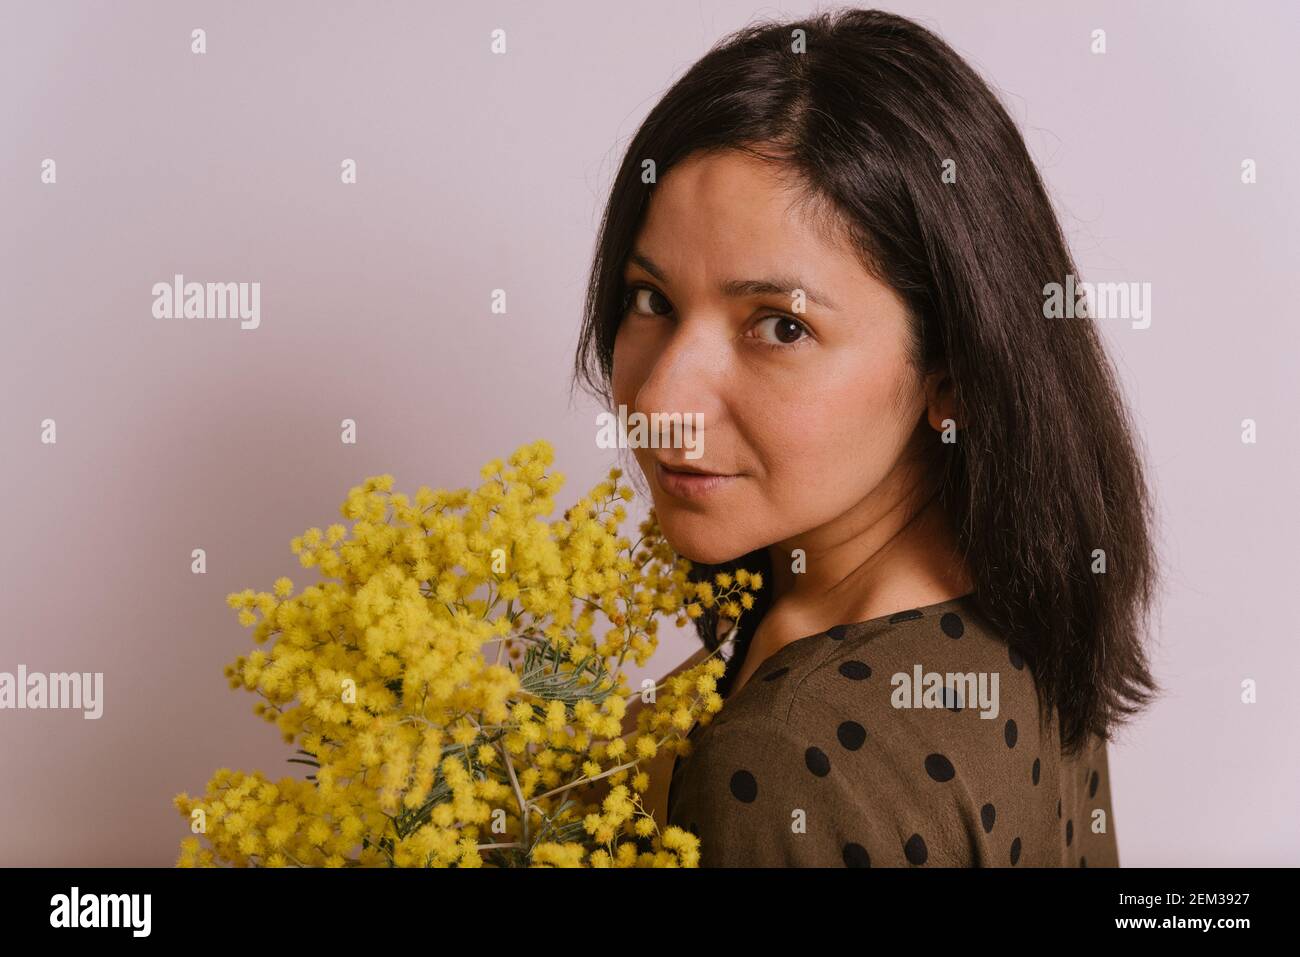 festa del giorno della donna. guardaroba di giovane donna che tiene mimosa fiori mumosa giallo bouquet su sfondo bianco sorridendo con vestiti casual guardando camer Foto Stock